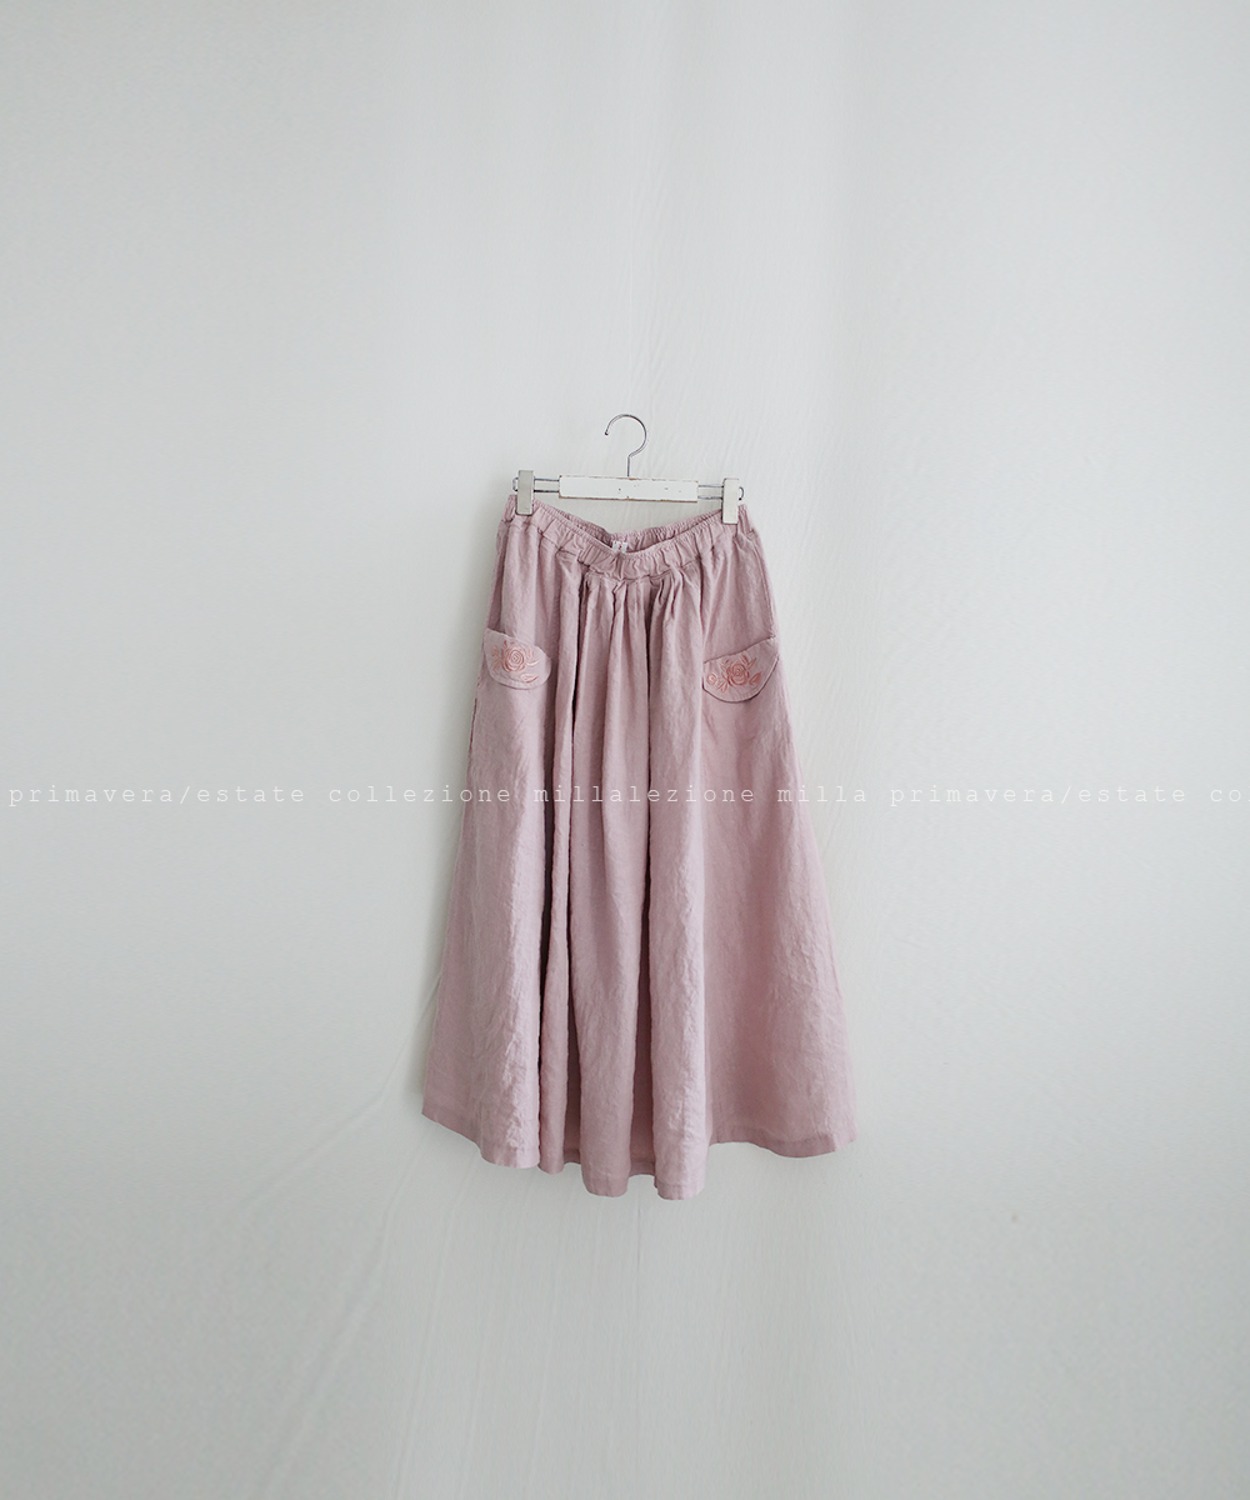 N°041 skirt